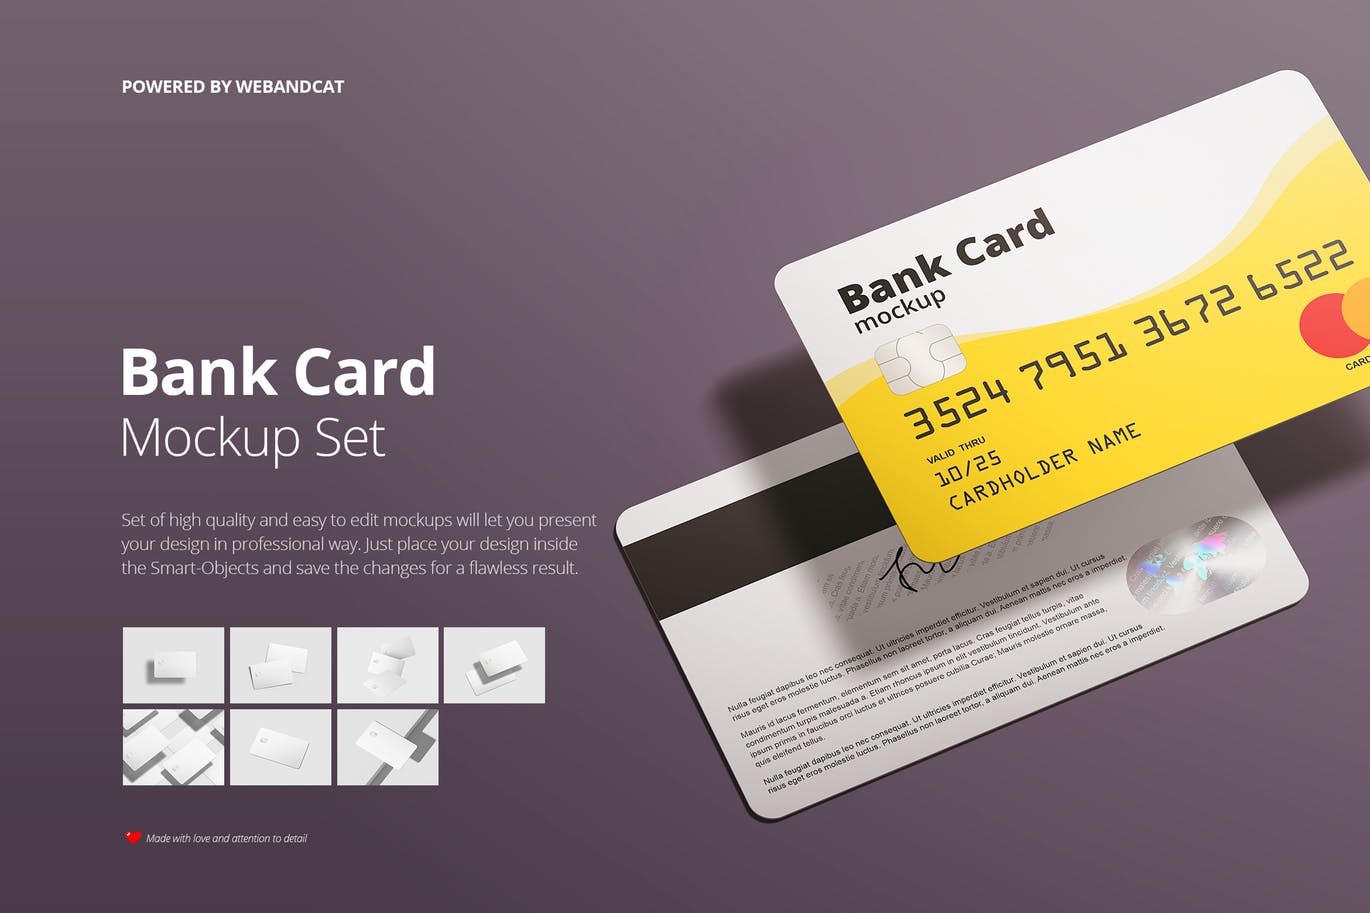 银行卡/会员卡版面设计效果图素材库精选模板 Bank / Membership Card Mockup插图